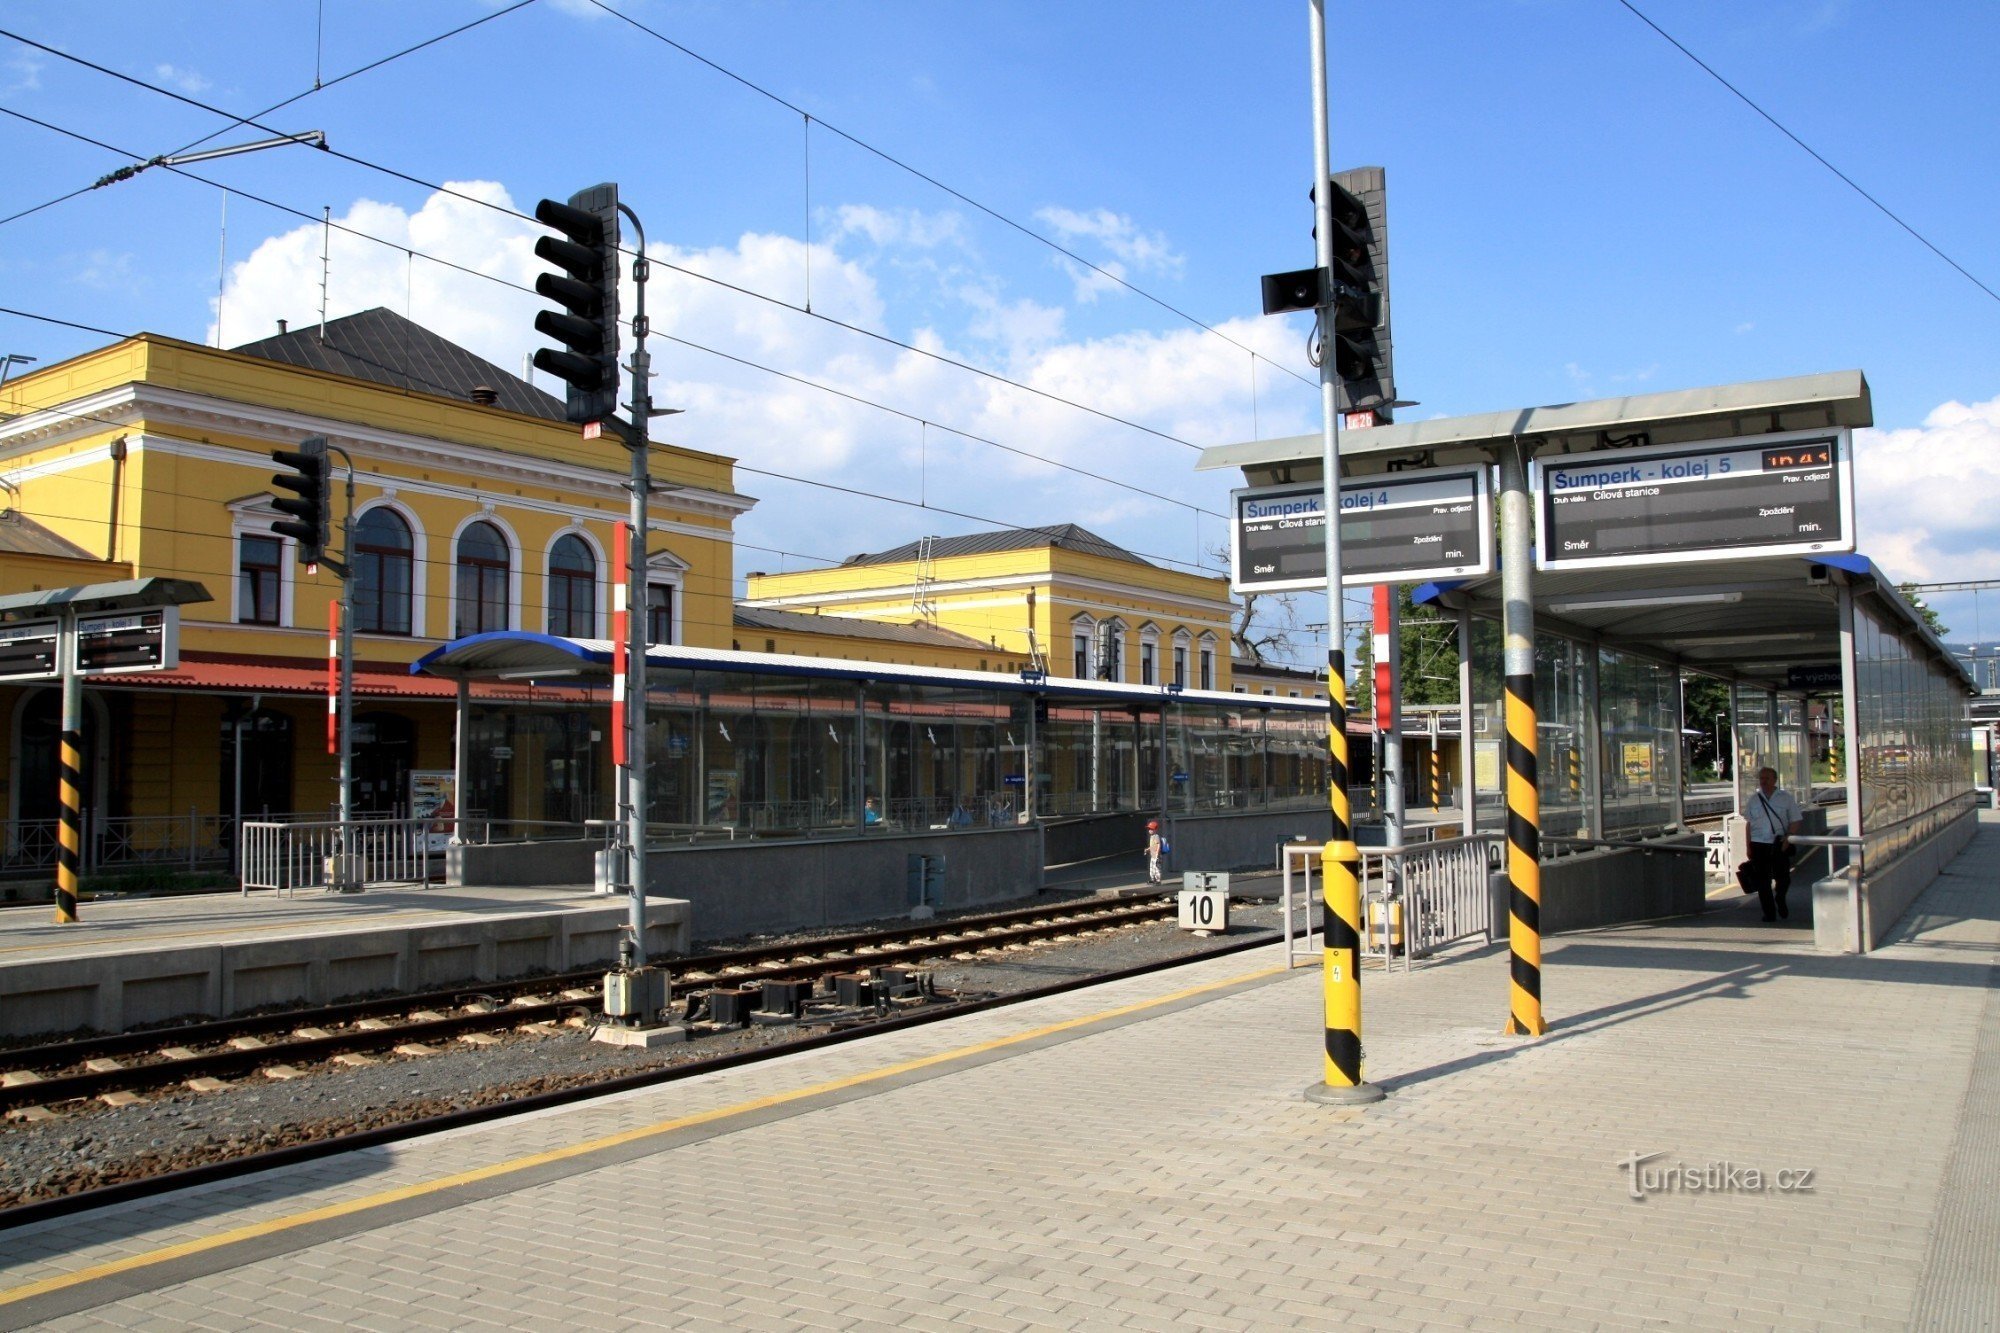 Шумперк - залізнична станція